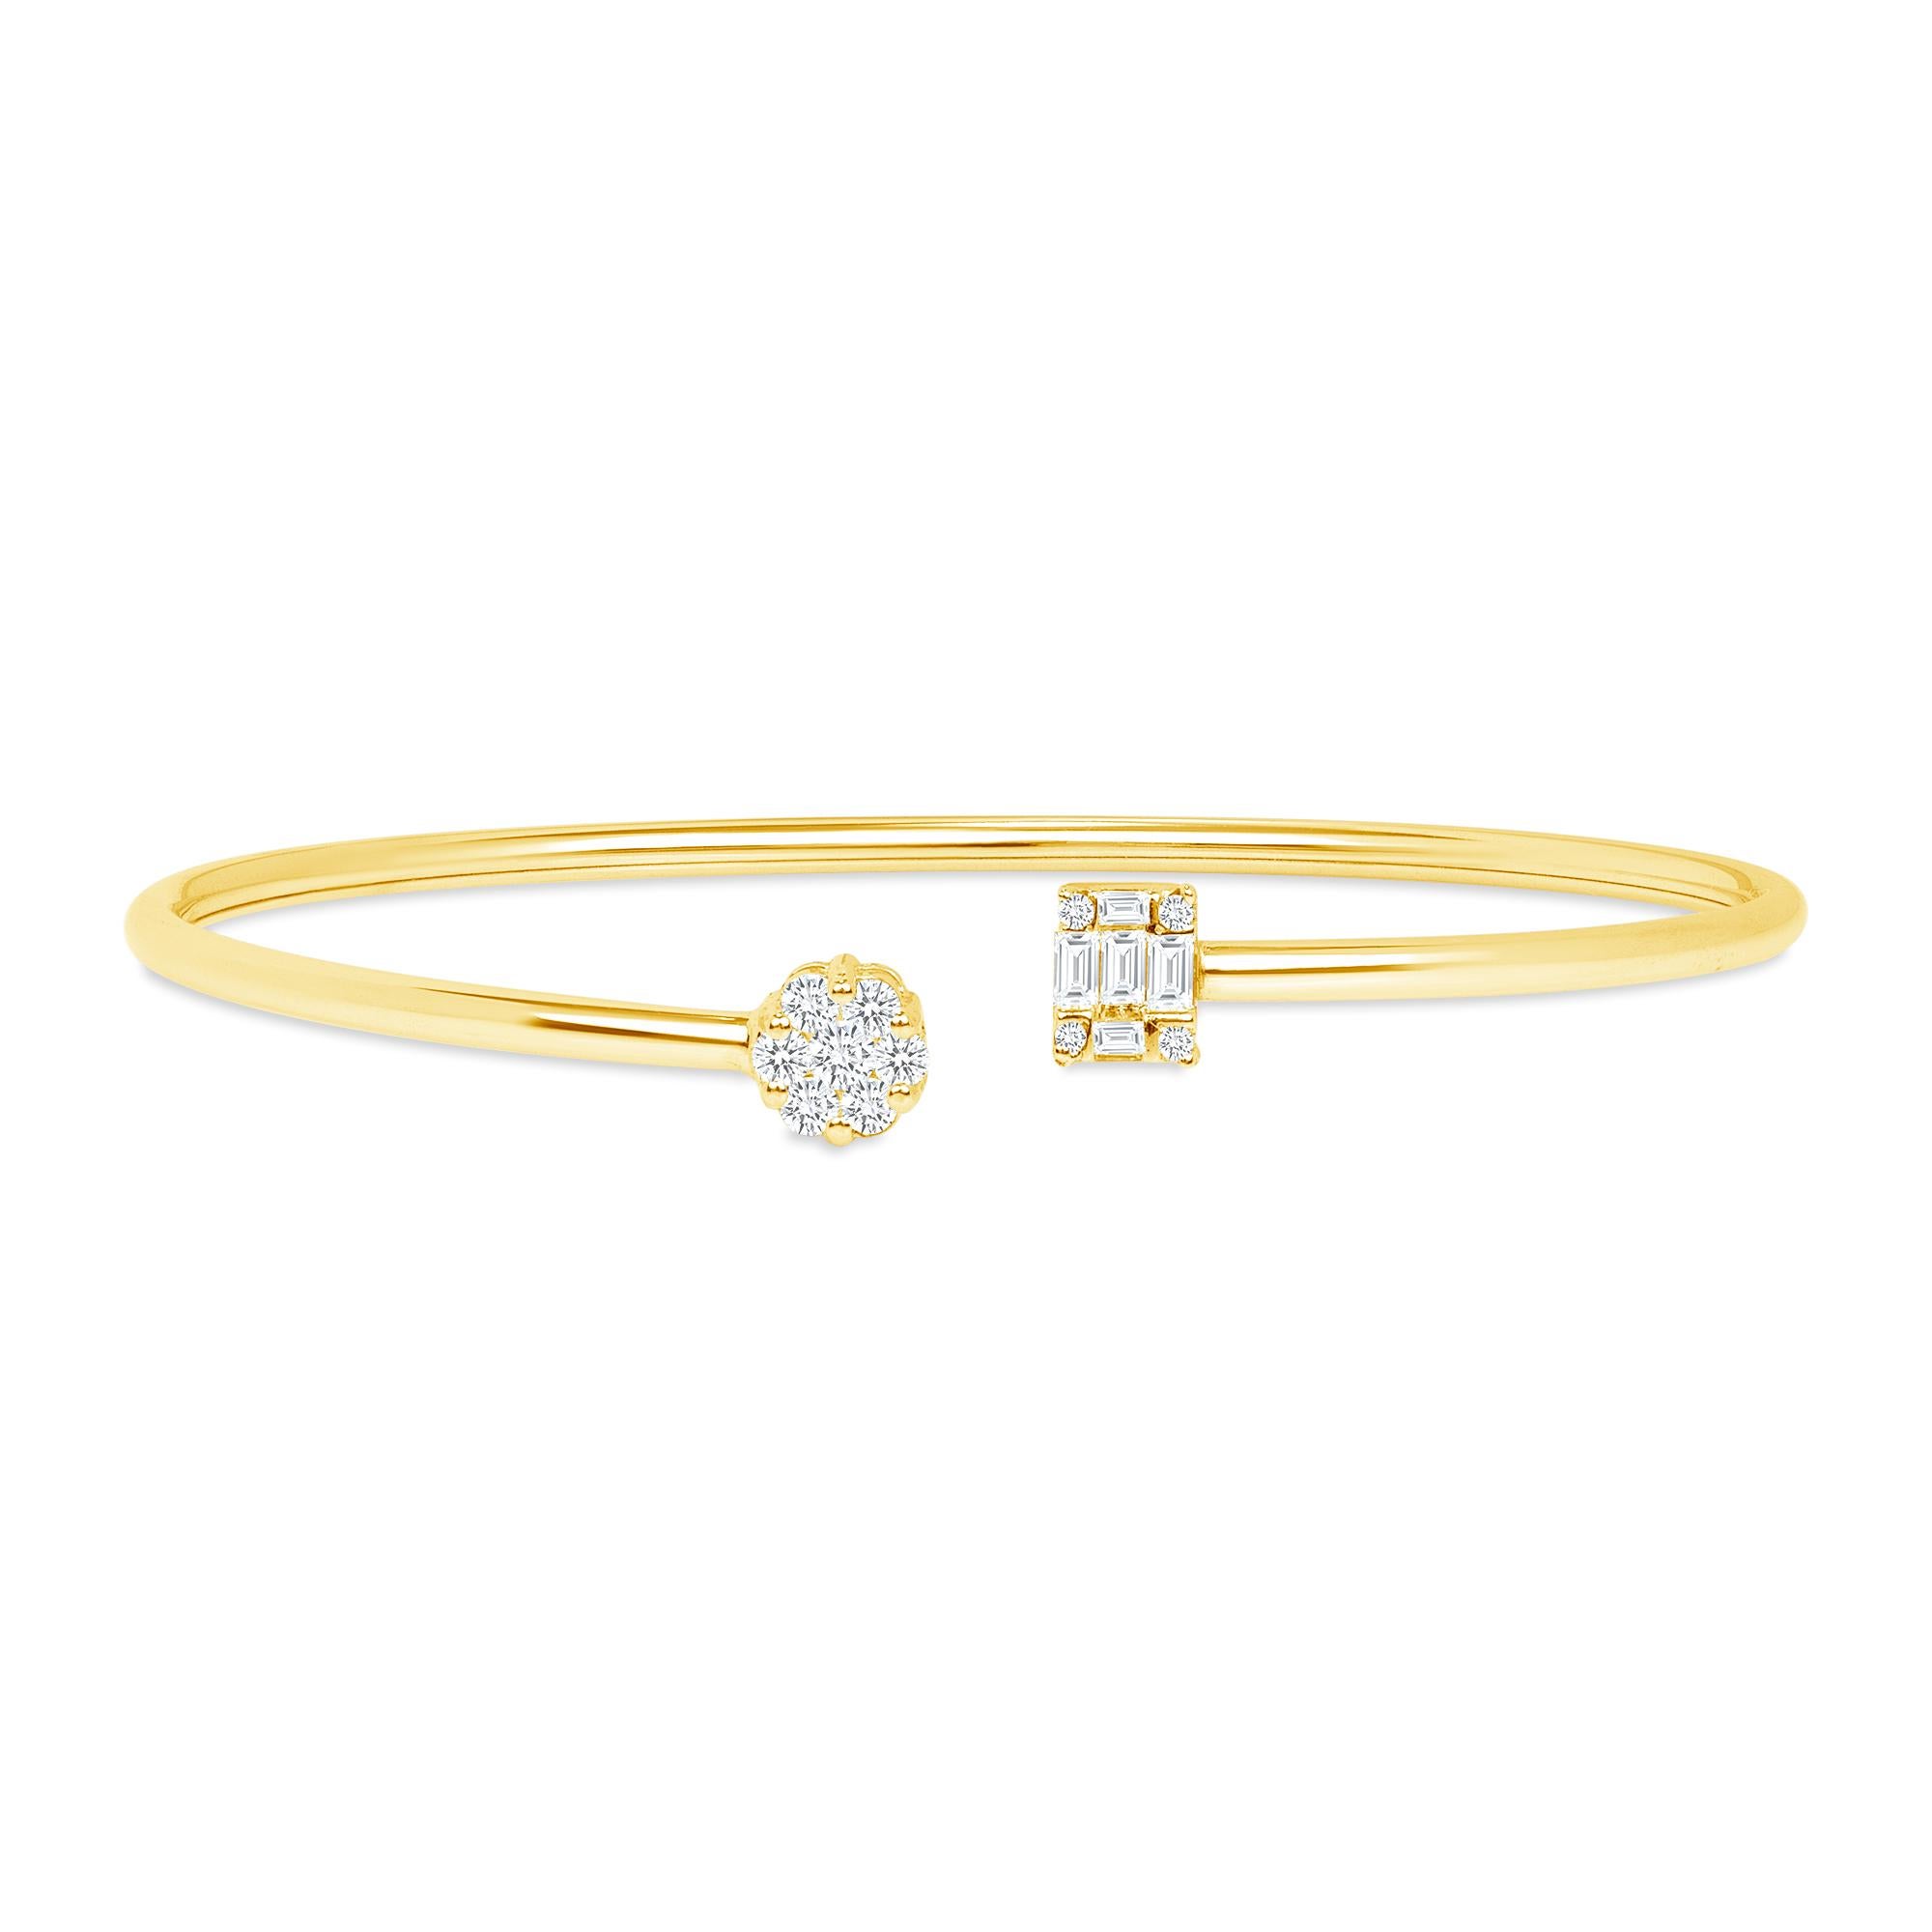 Bracelet manchette en or jaune 18k avec diamant, bracelet en diamant de 0,50 ct, bracelet à manchette ouverte, bracelet à illusion

Description

Magnifique bracelet en or 18 carats incrusté de diamants ronds et baguettes de couleur naturelle.